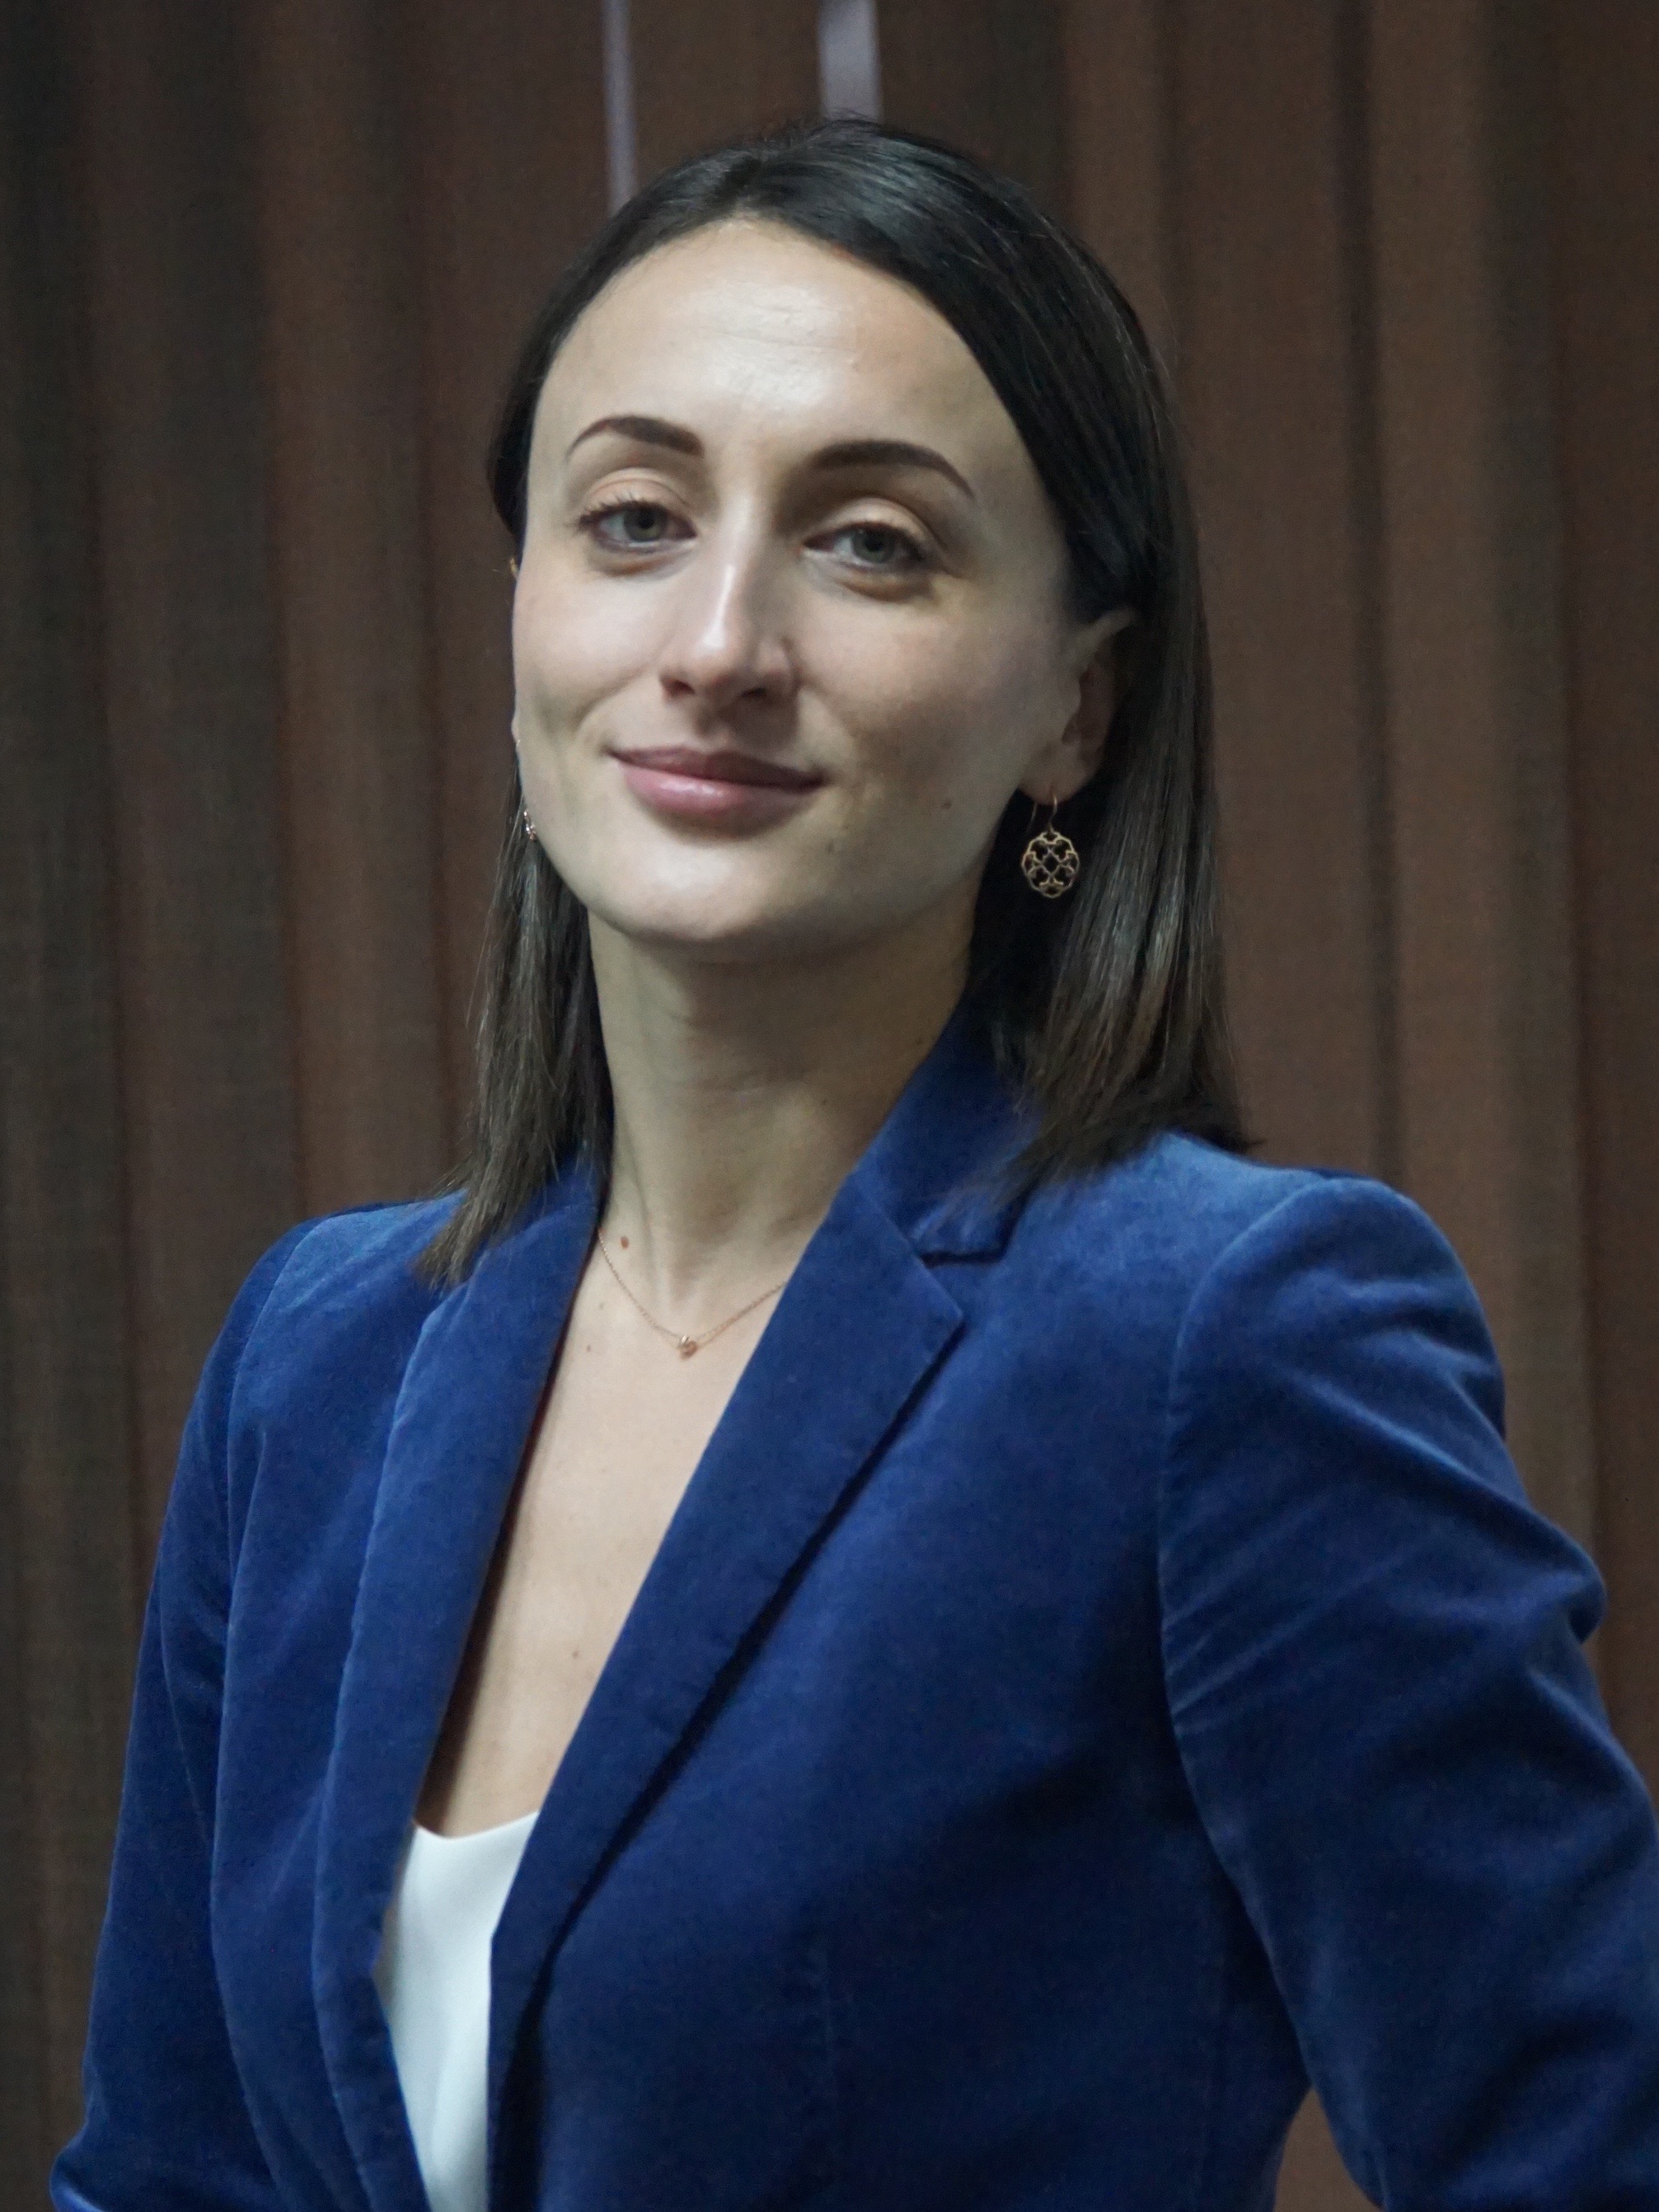 Синельникова Екатерина Викторовна — Руководитель бизнеса ипотечного кредитования банка «Санкт-Петербург»